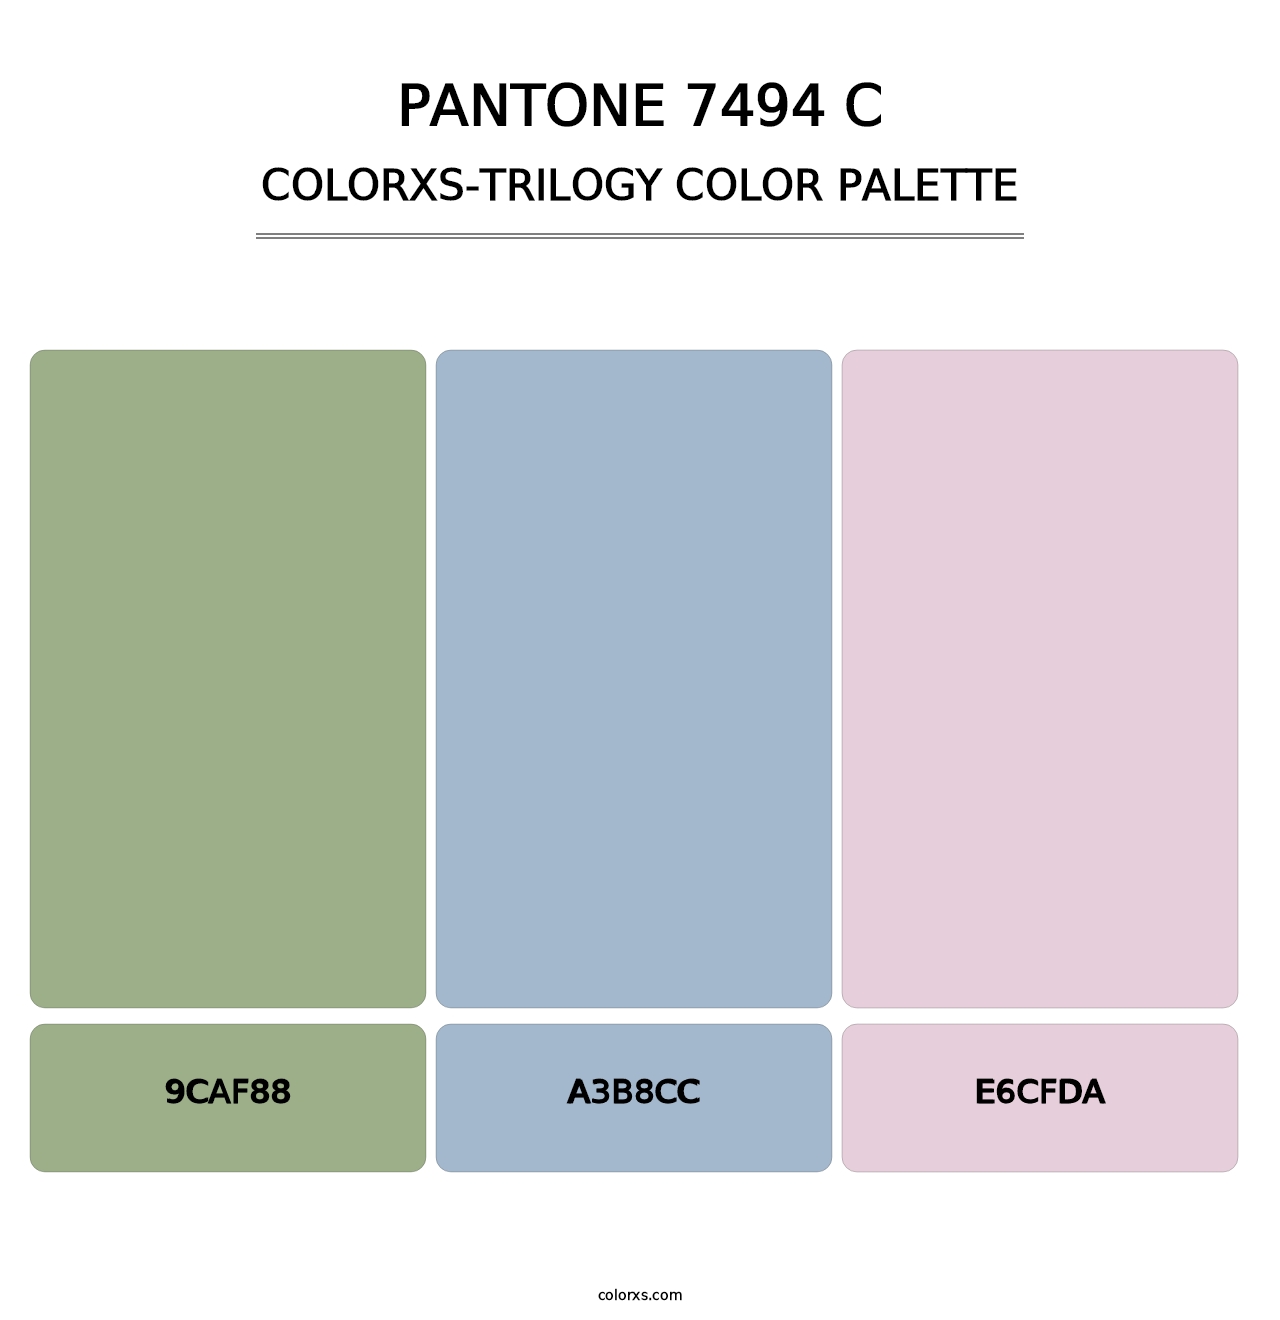 PANTONE 7494 C - Colorxs Trilogy Palette